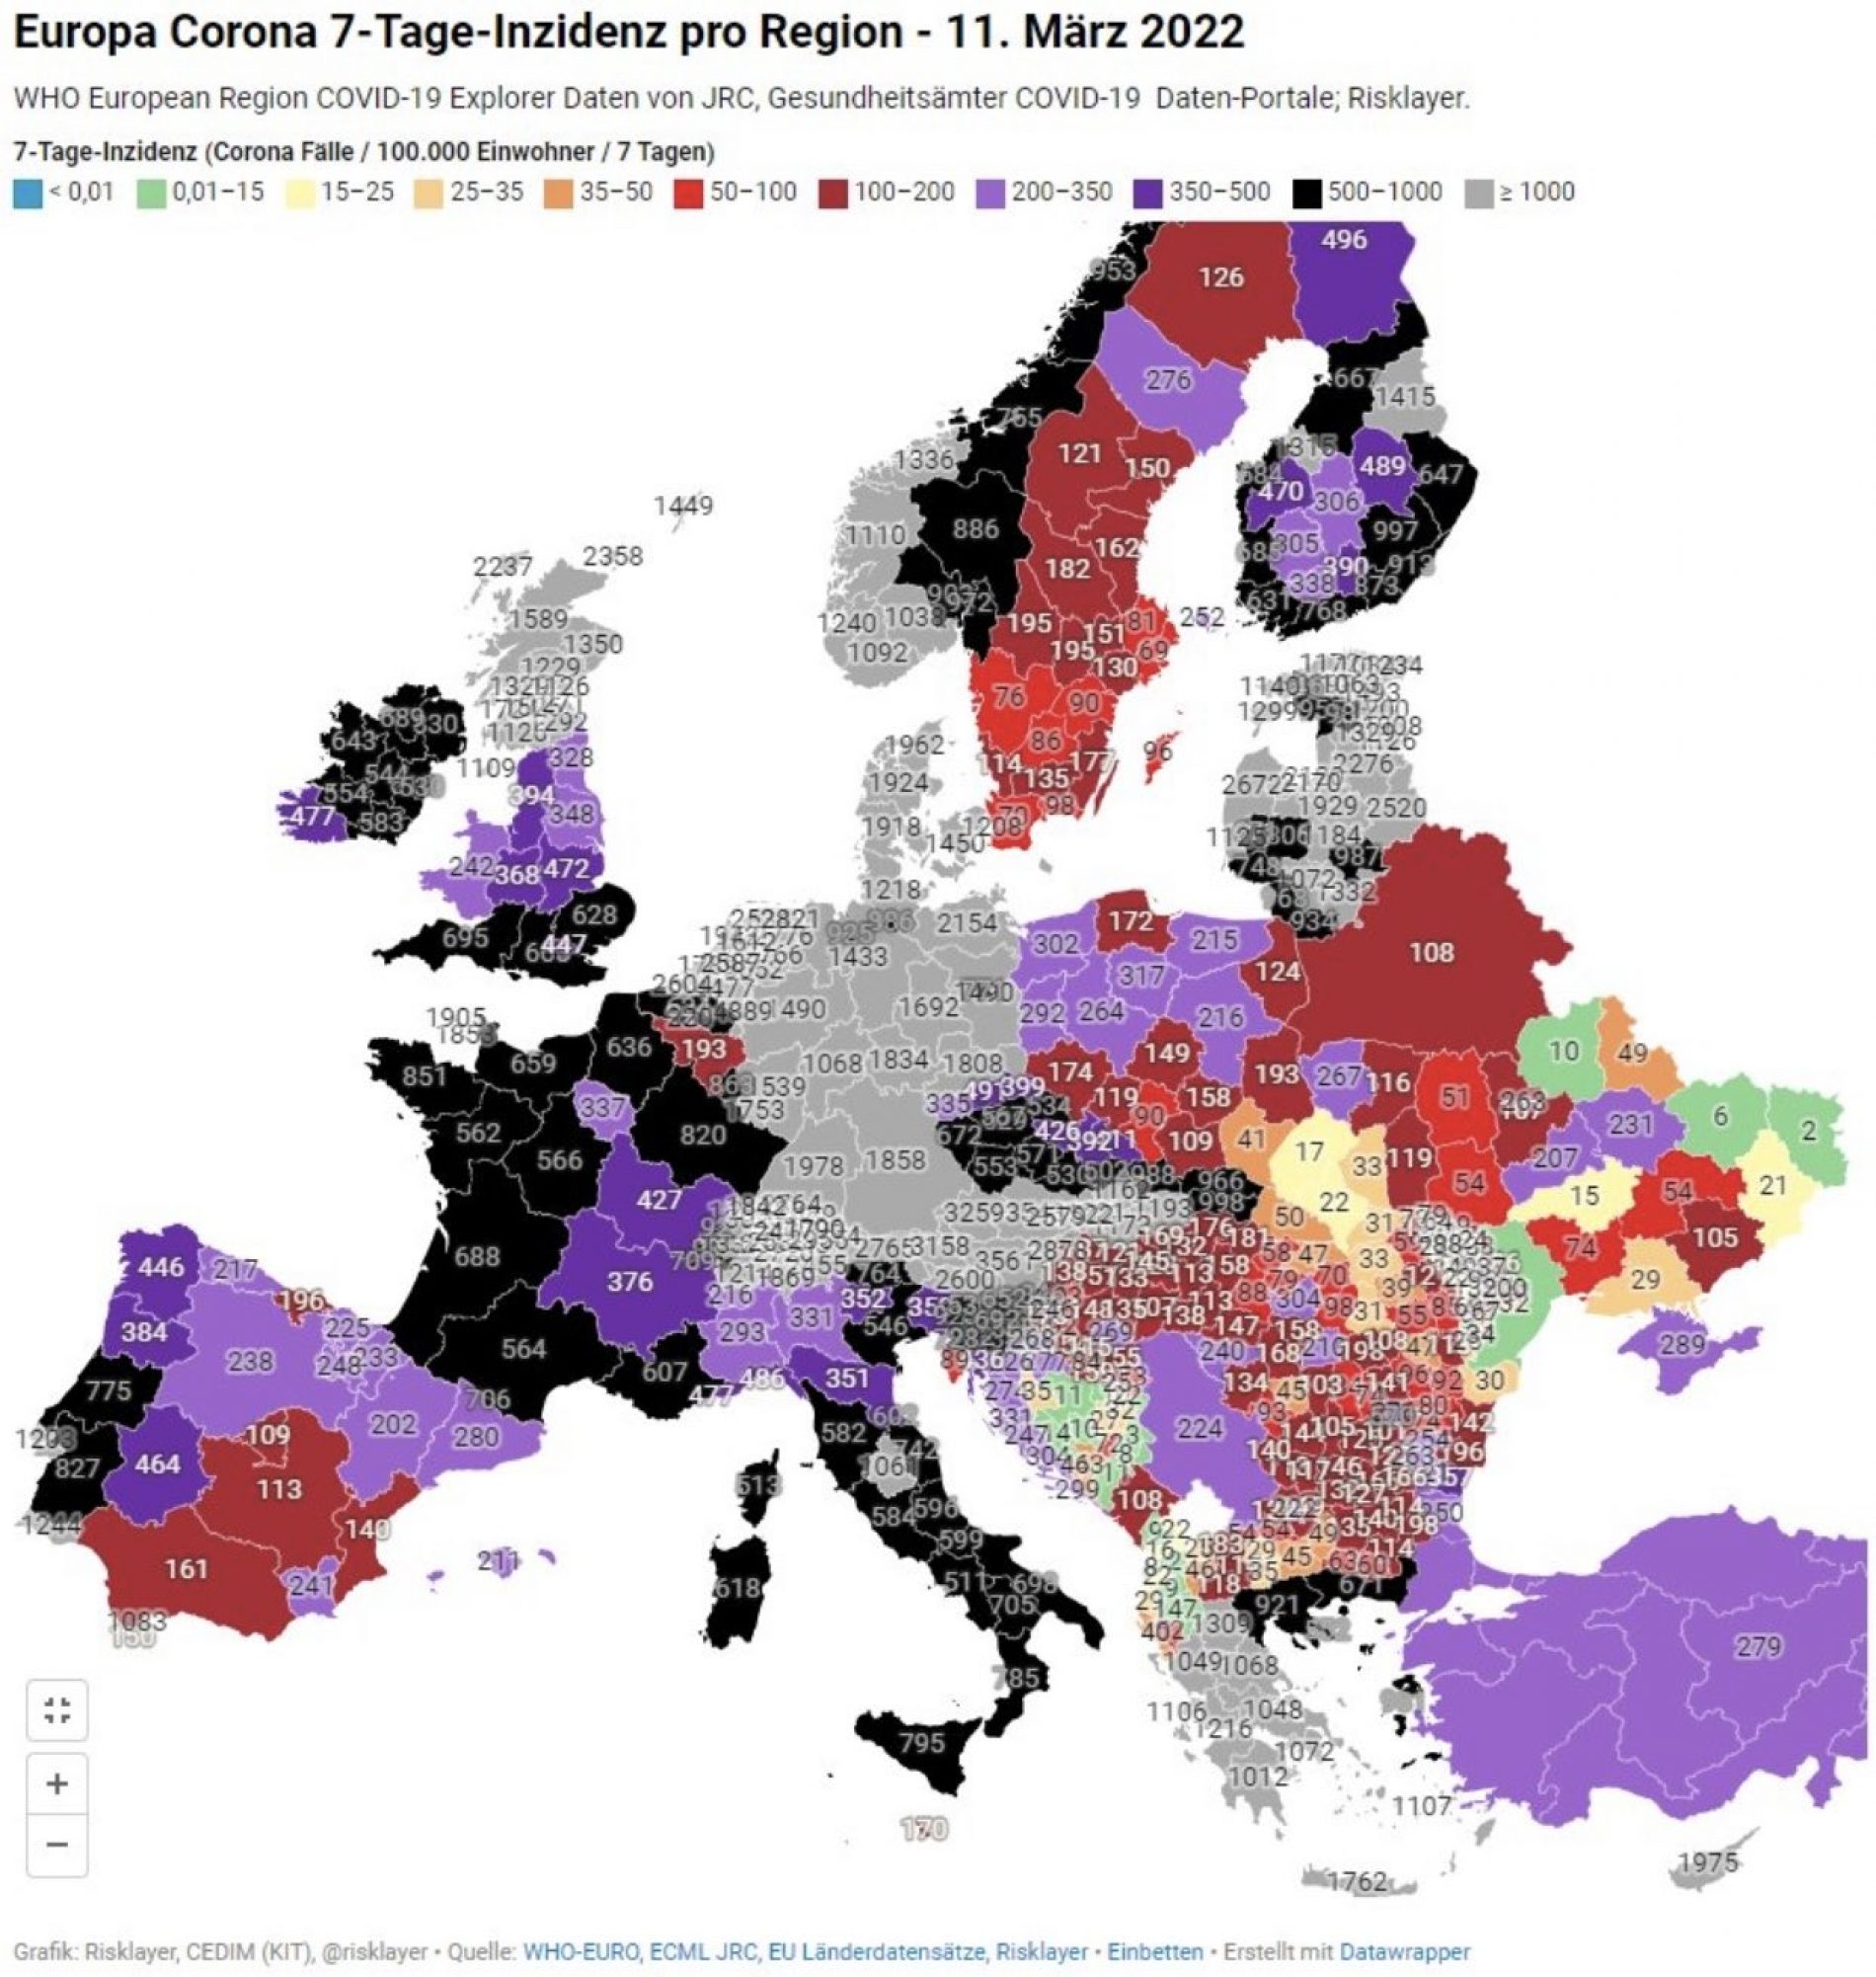 Njemačka trenutno ima najvišu incidencu COVID-19 u Evropi; Bosna na ‘zelenoj grani’